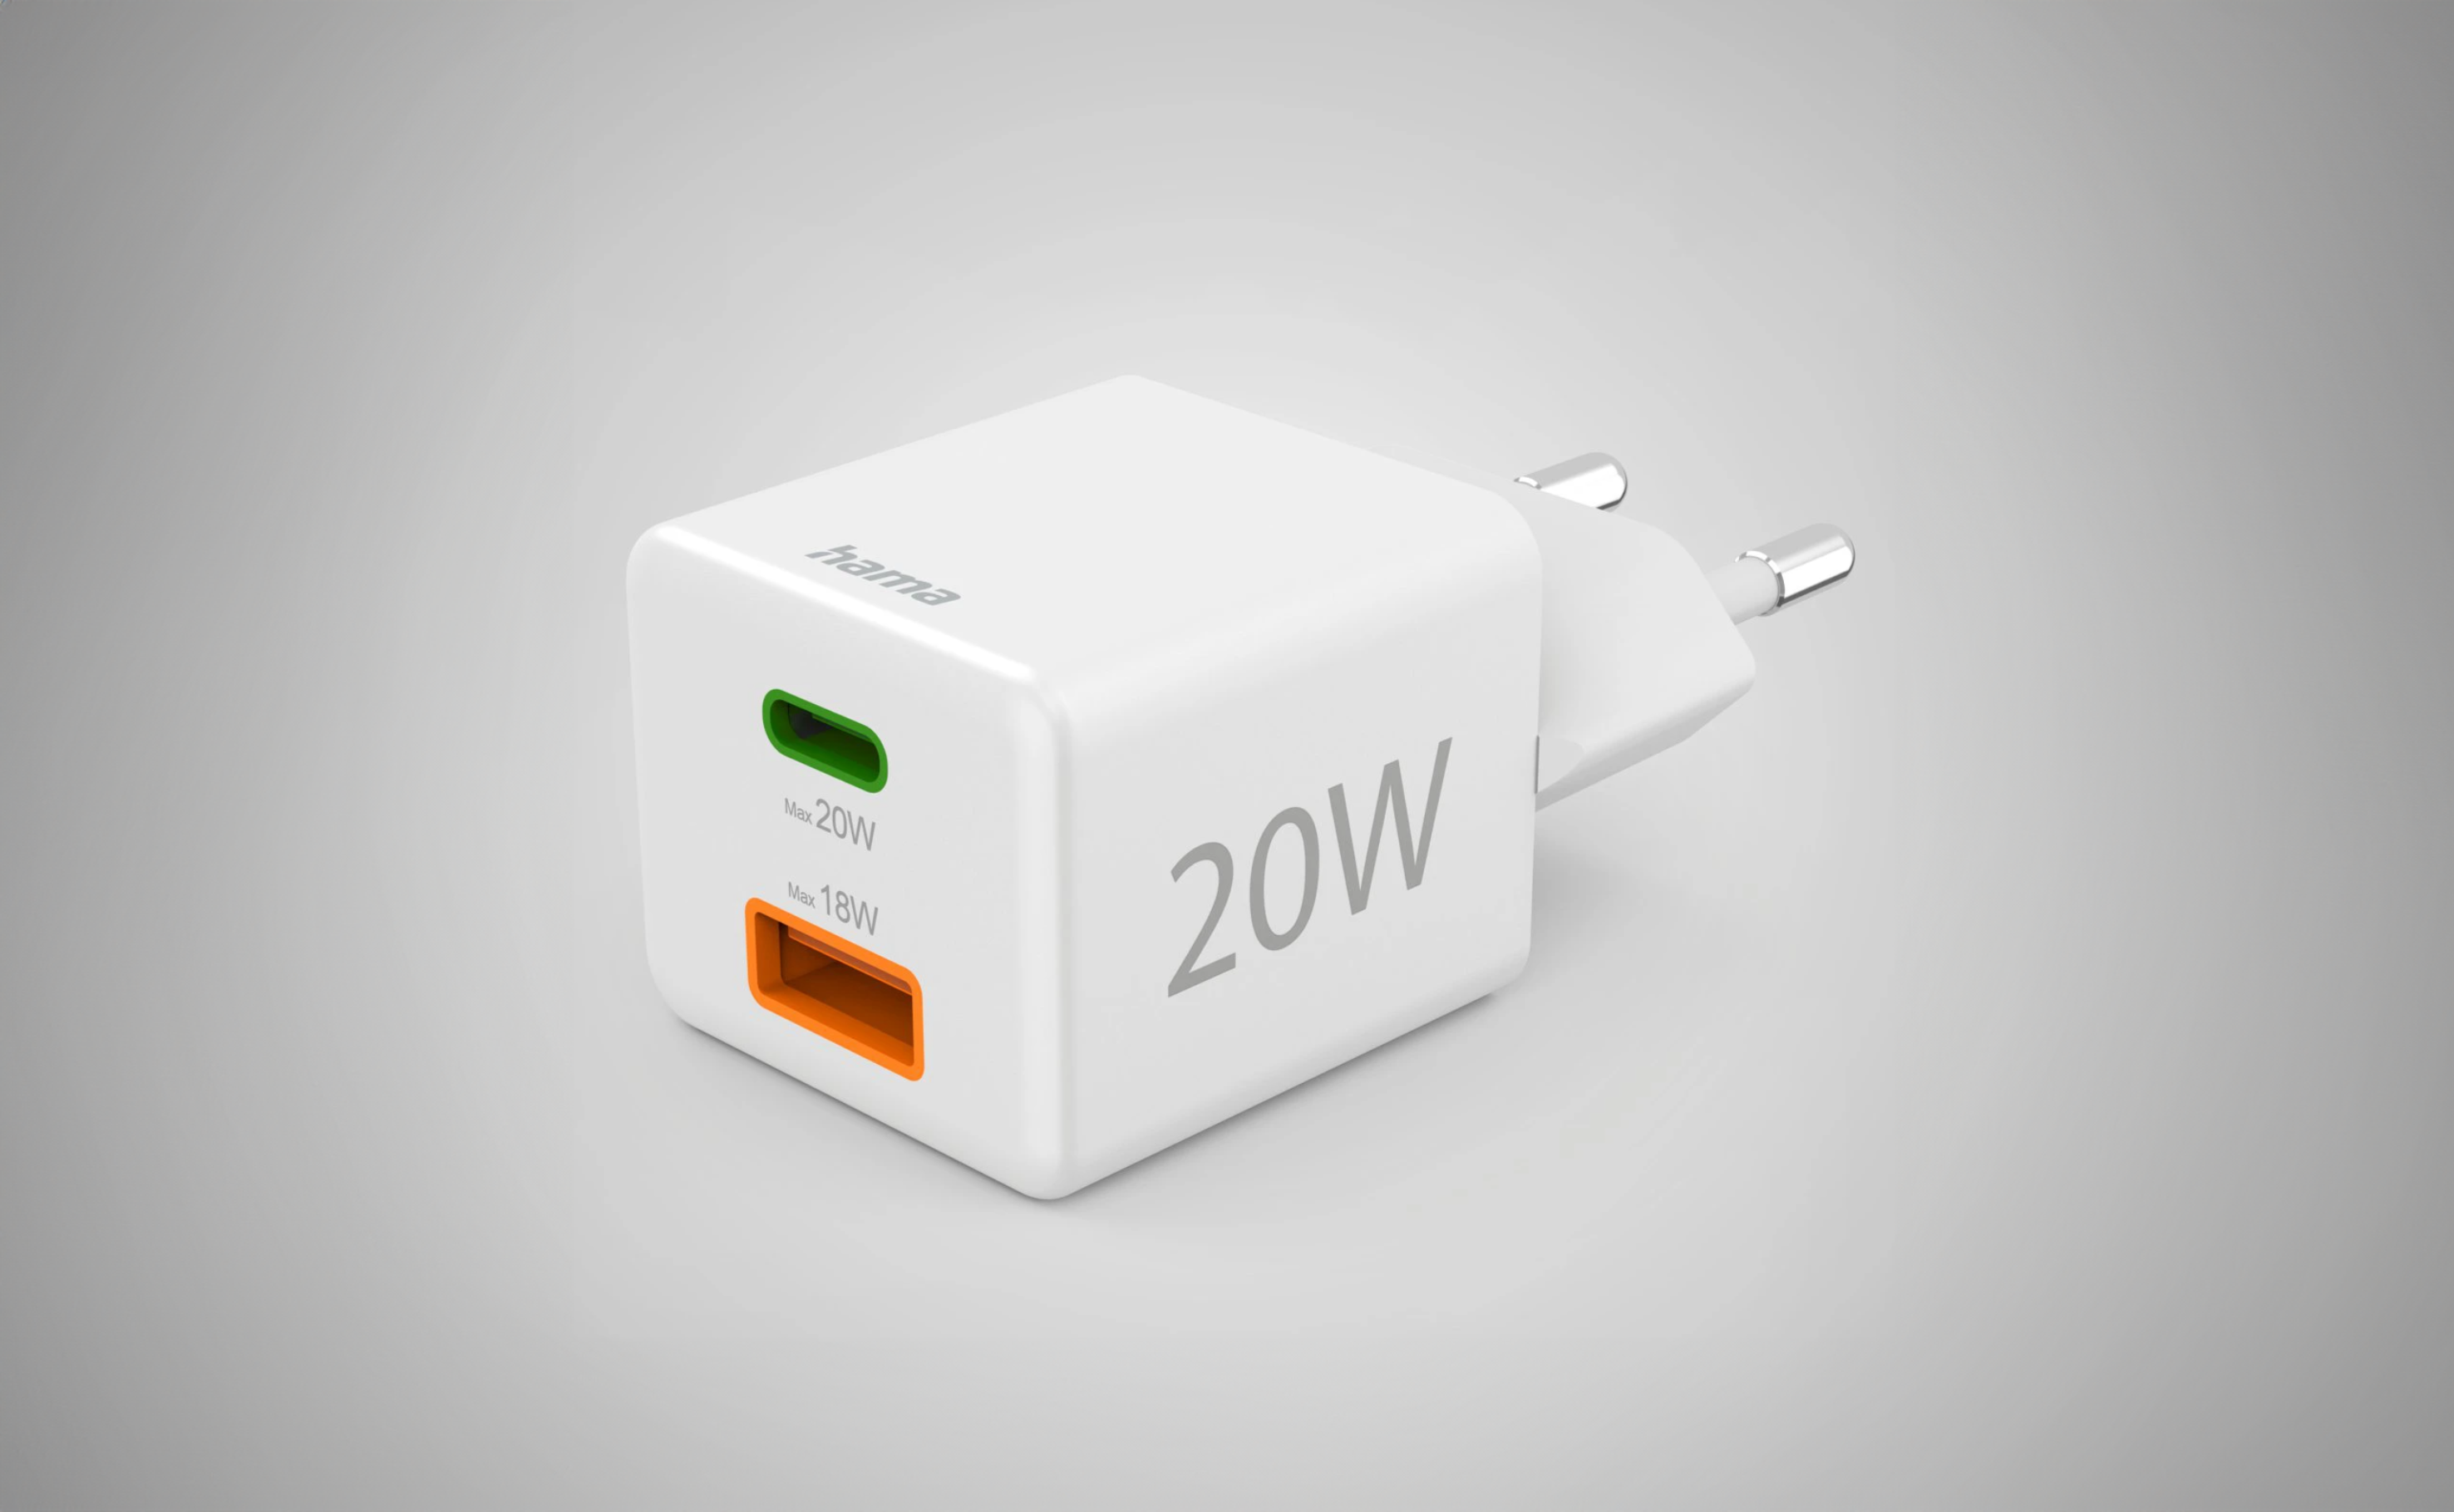 Biała ładowarka sieciowa USB-C o mocy 20W z jednym zielonym i jednym pomarańczowym portem, na szarym tle.